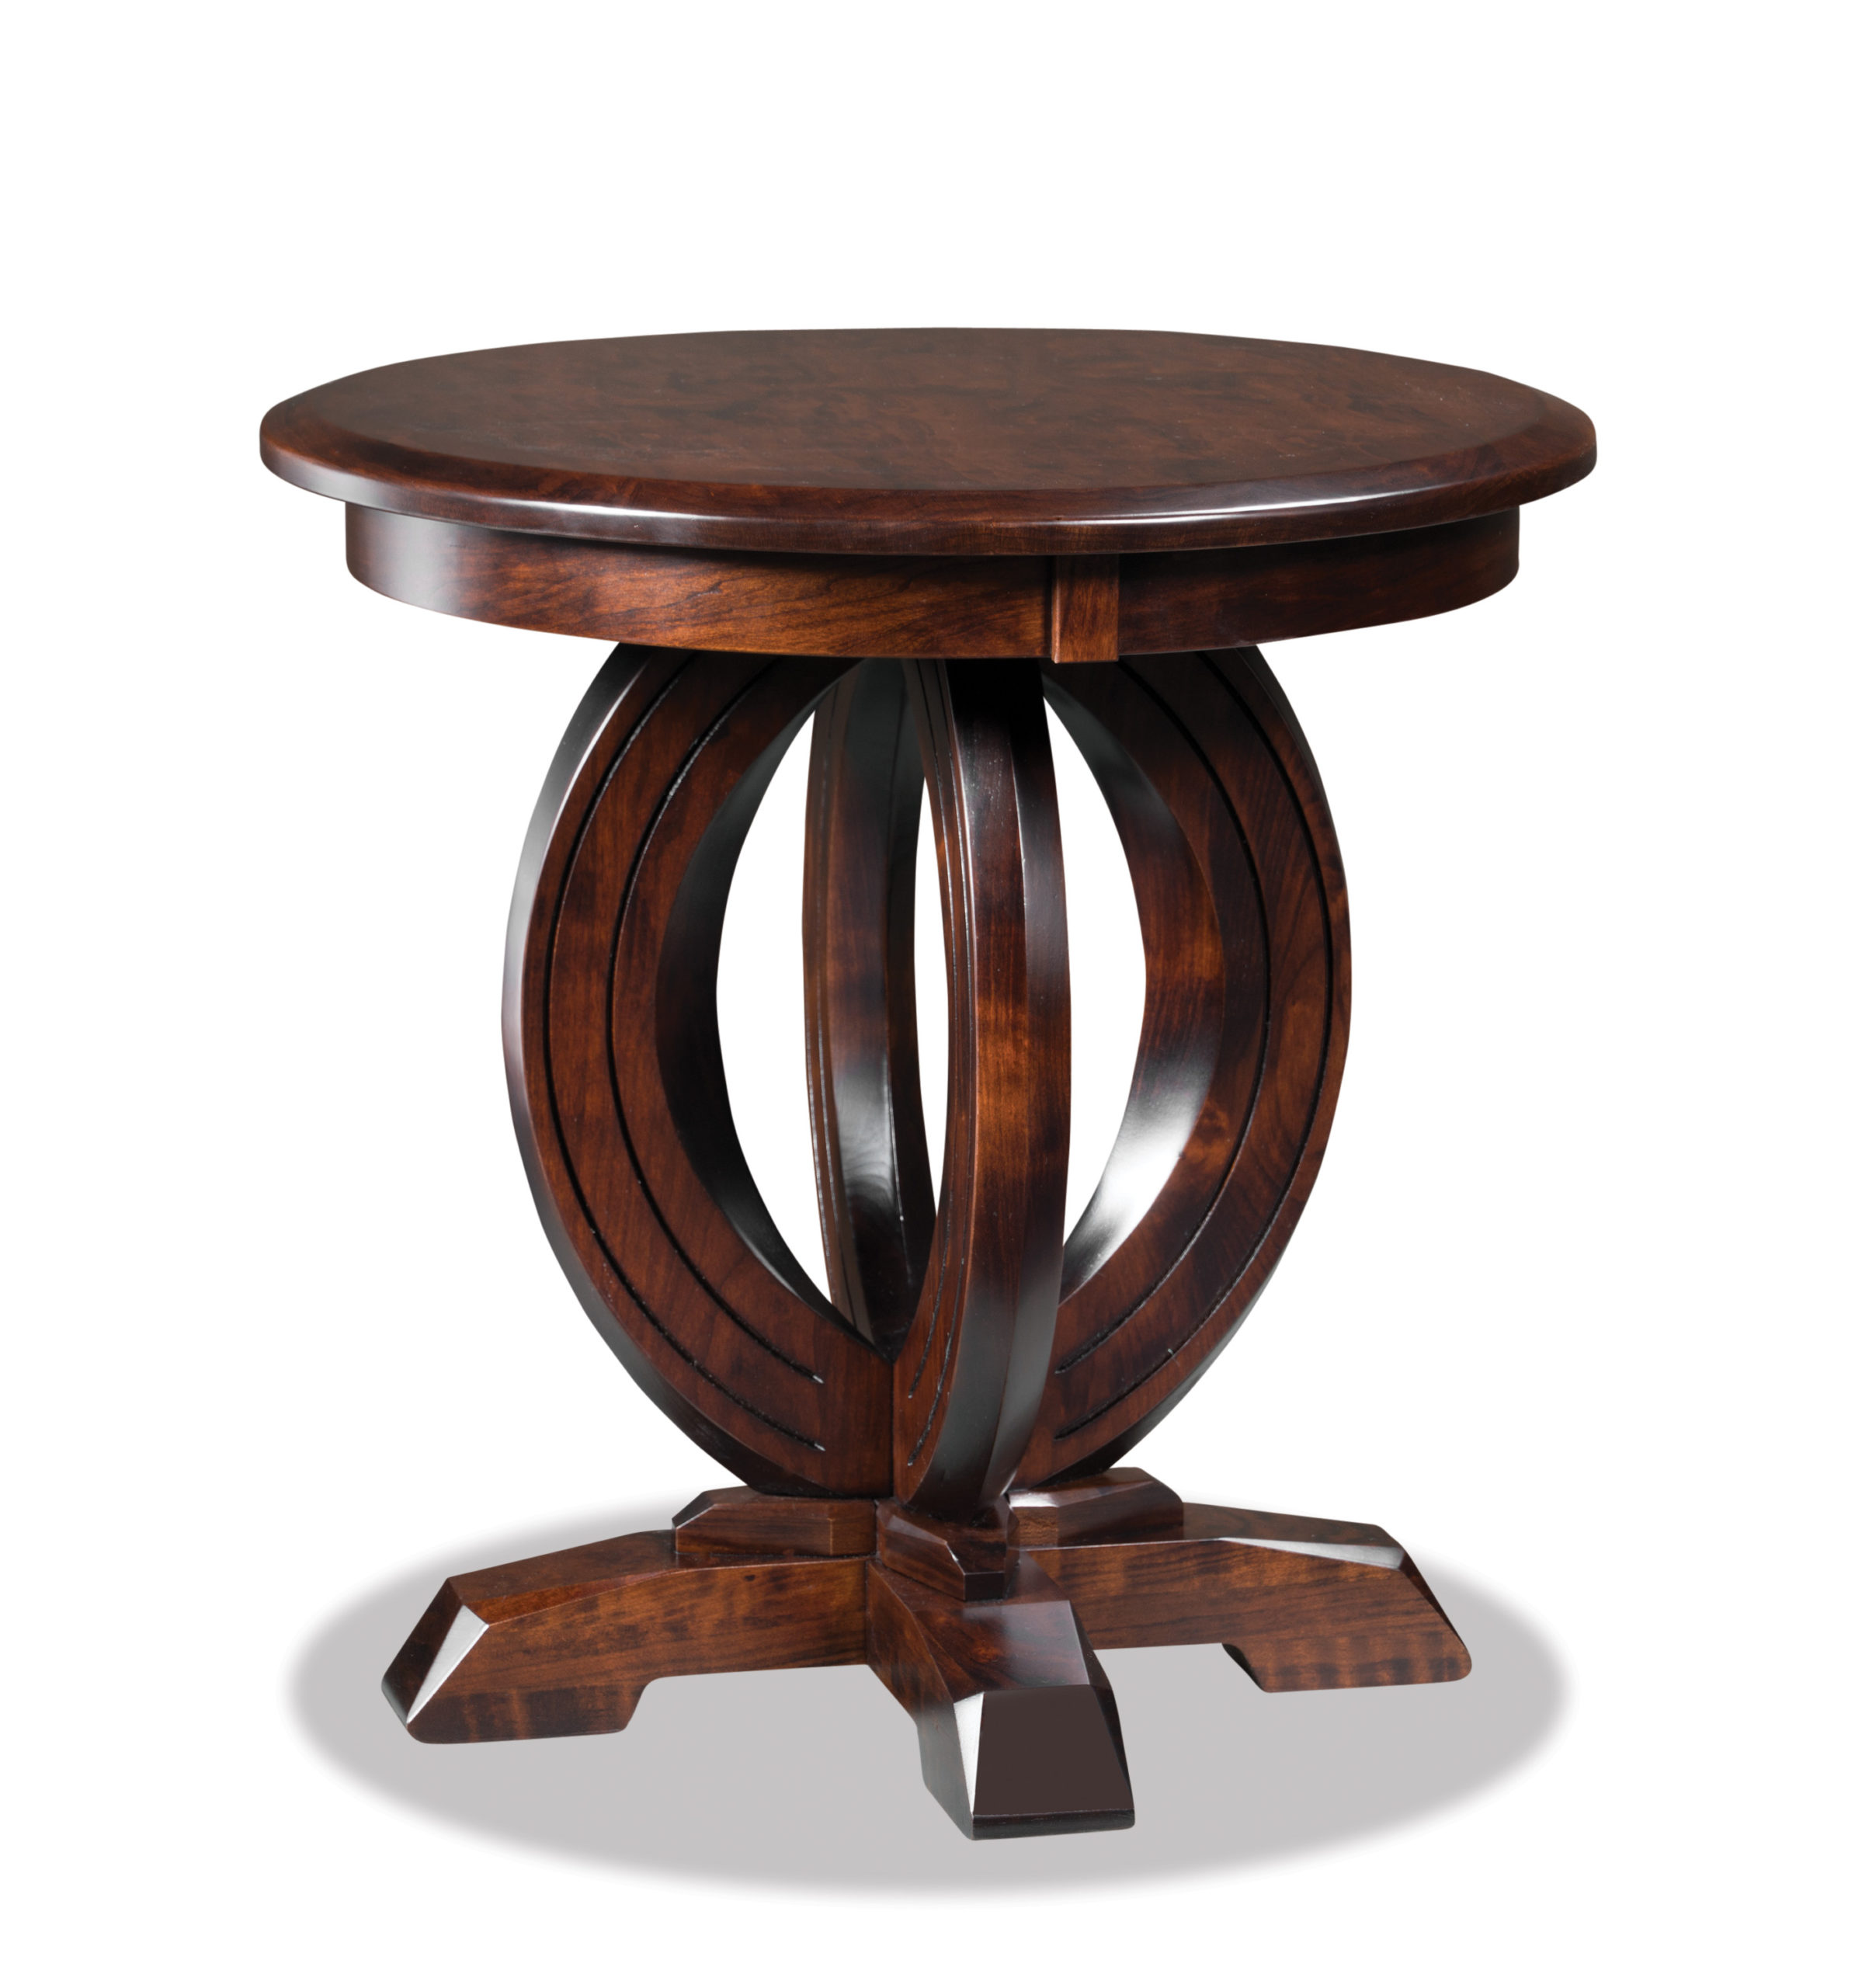 Столик из дерева круглый. Круглый деревянный столик. Журнальный столик круглый деревянный. Кофейный столик из дерева круглый. Кофейный столик круглый деревянный.